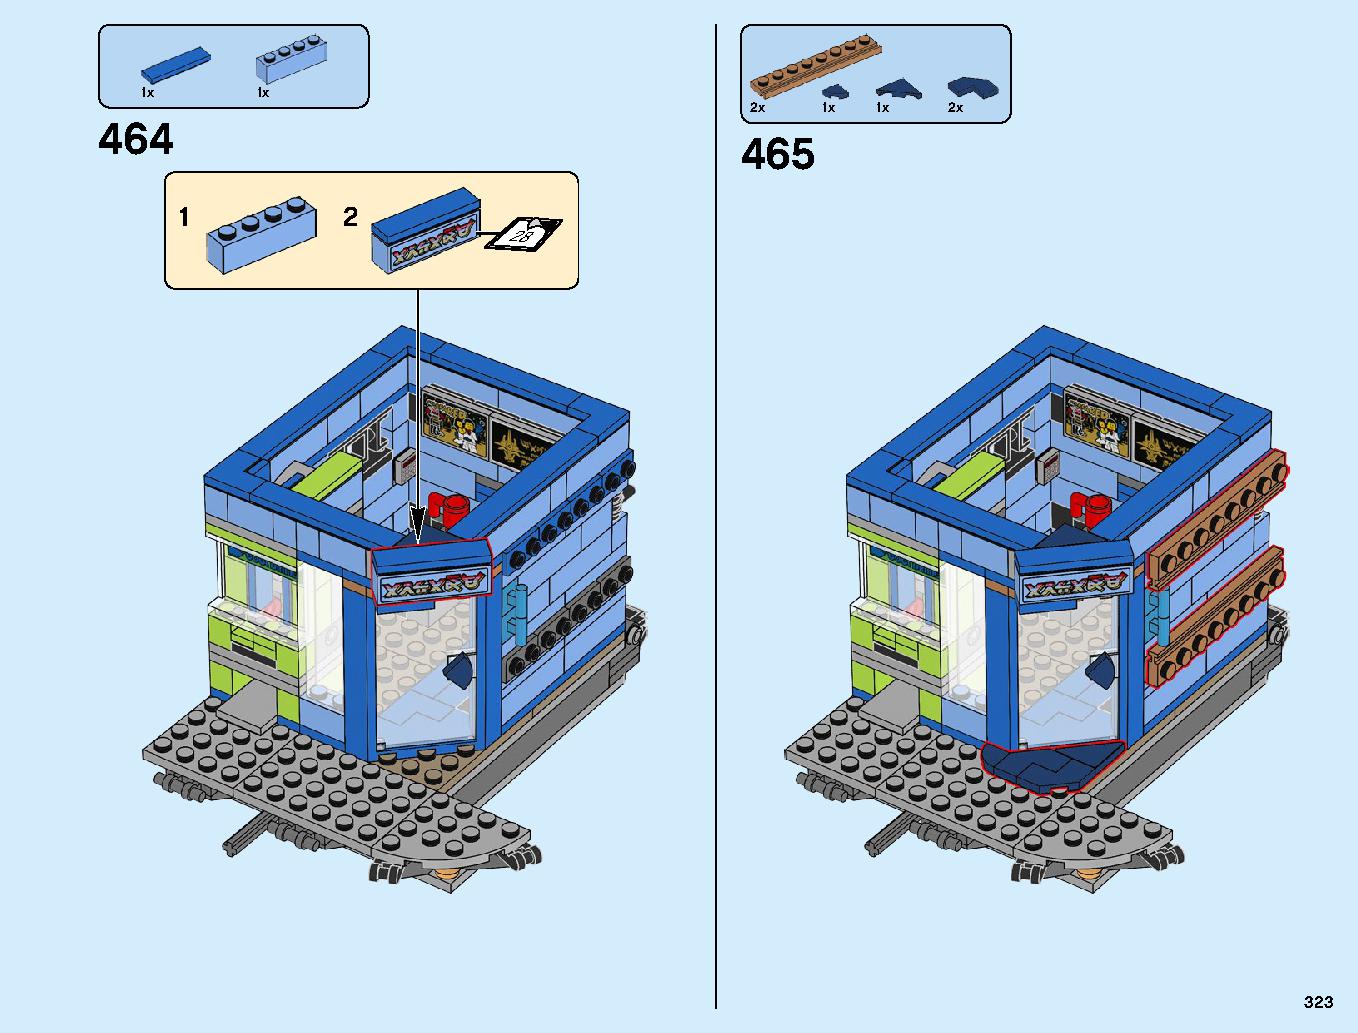 ニンジャゴーシティ・ポートパーク 70657 レゴの商品情報 レゴの説明書・組立方法 323 page